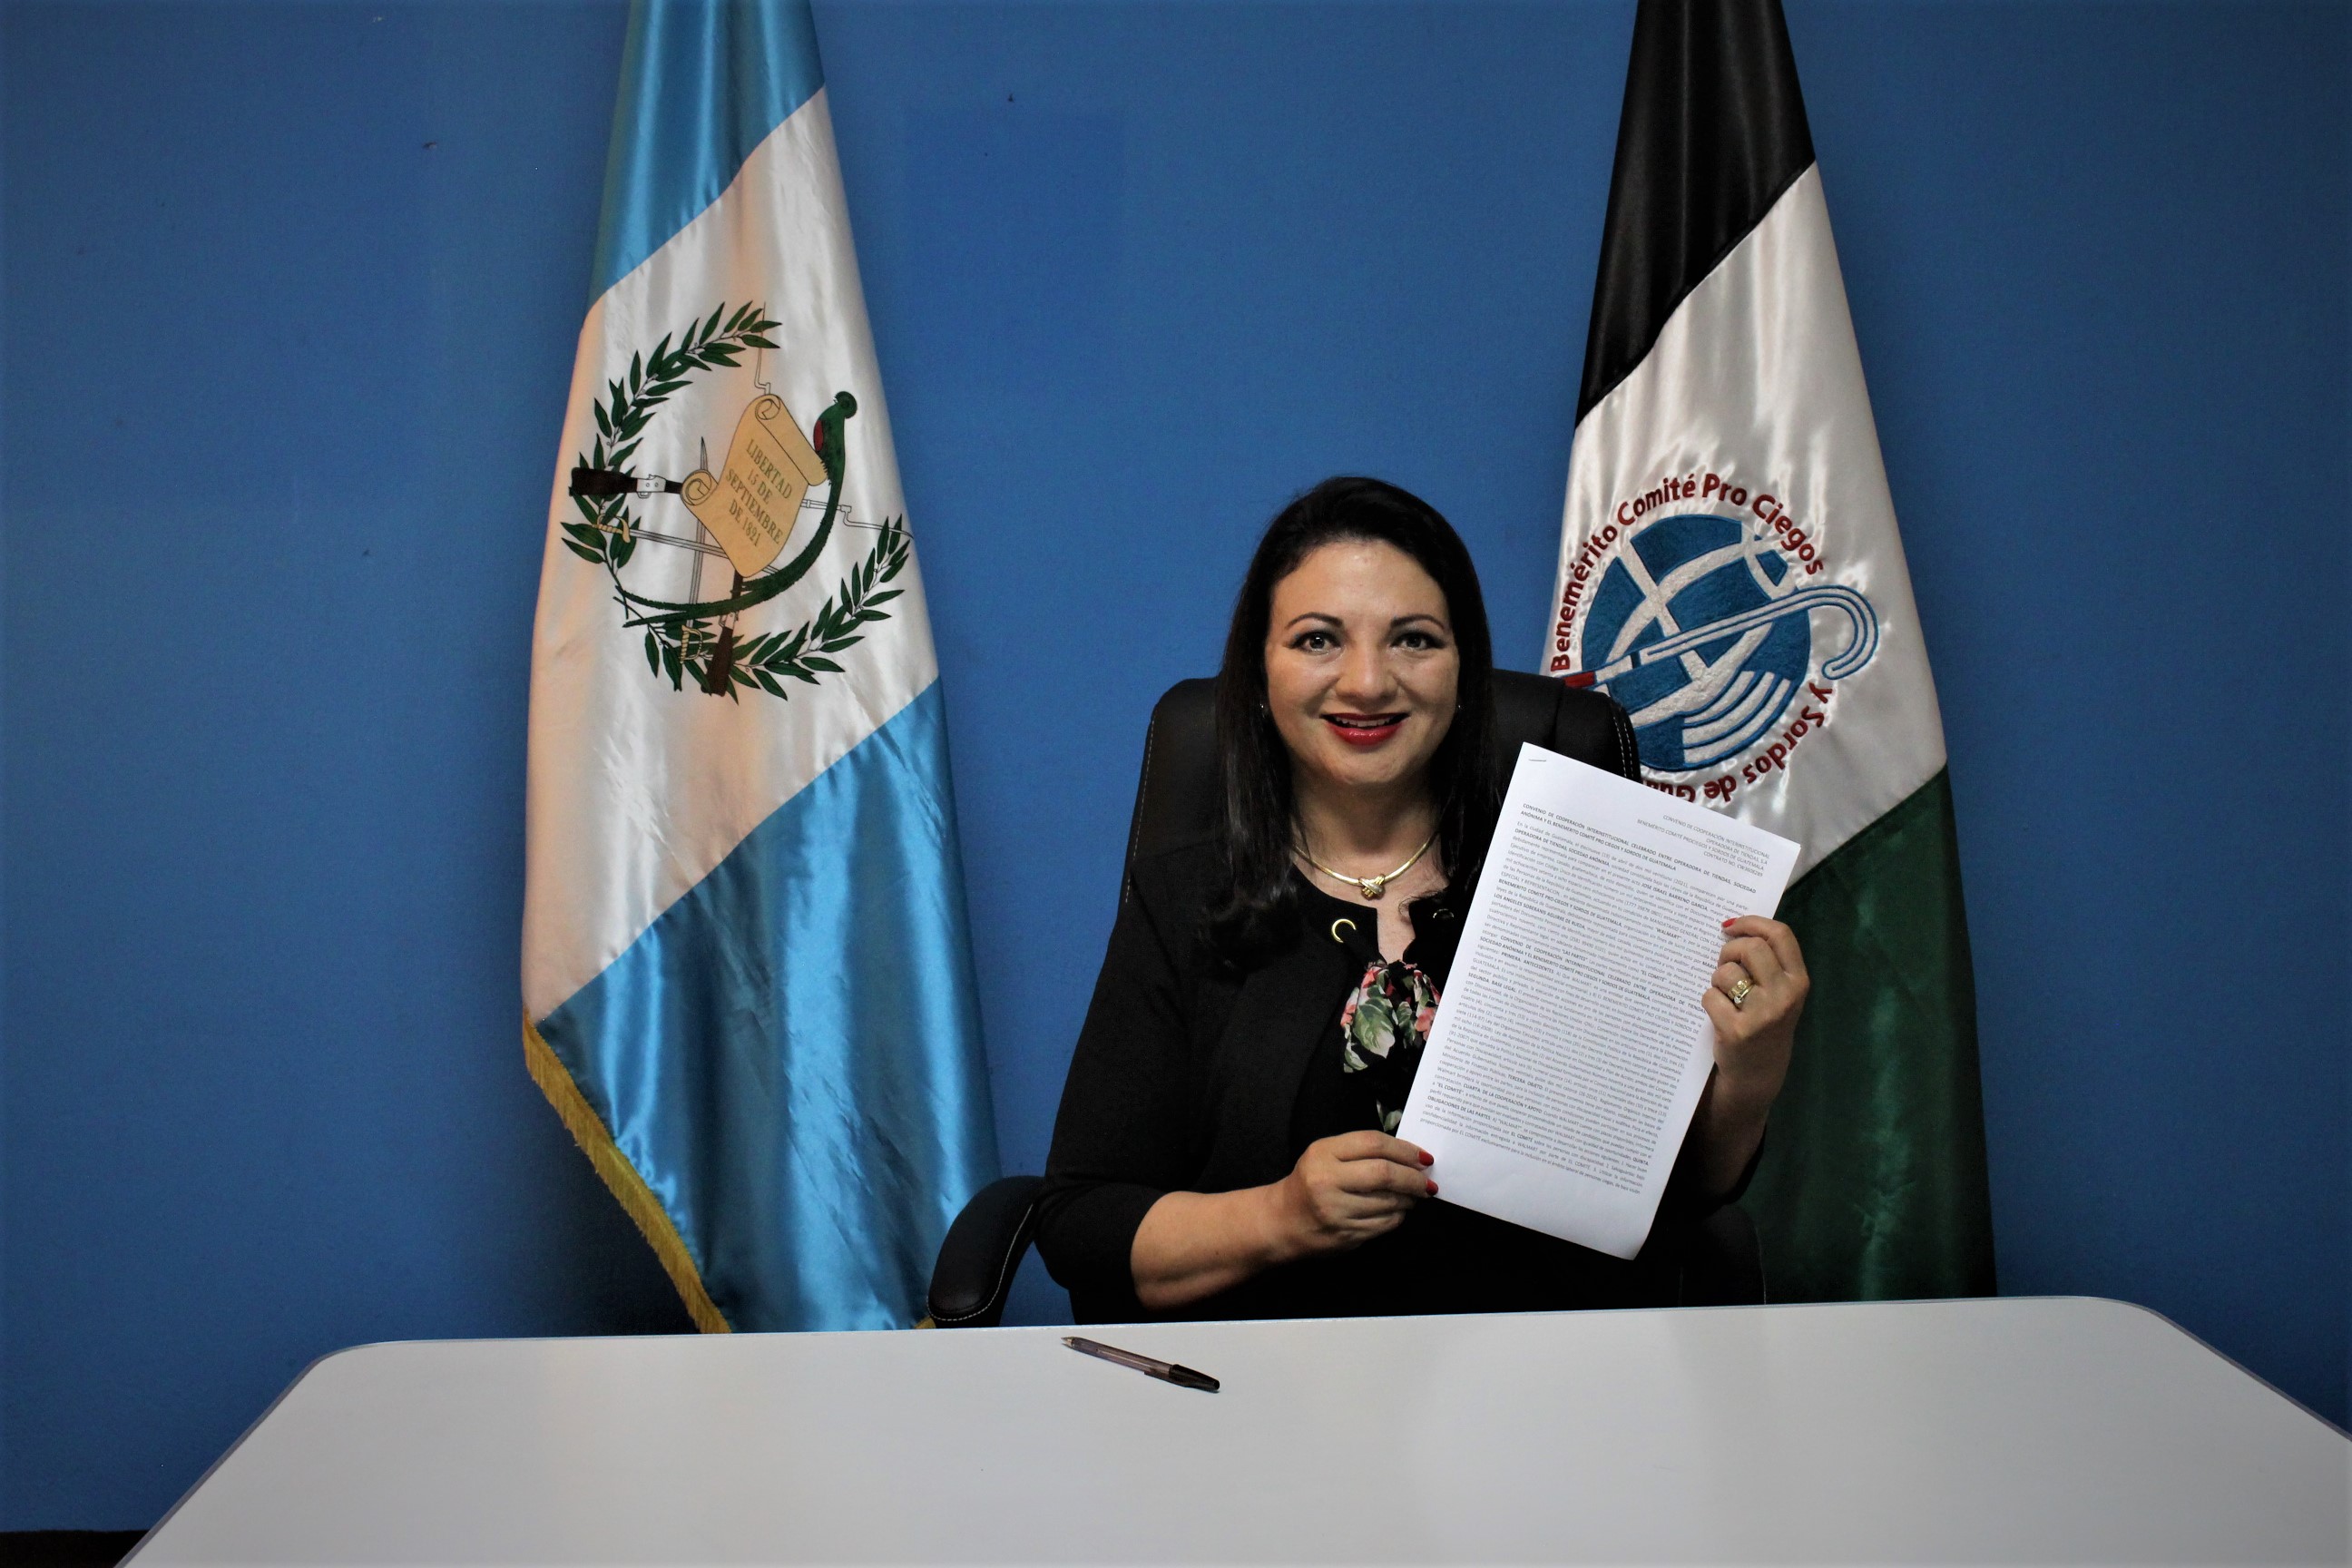 María de los Ángeles, presidenta de la Junta directiva del Comité de Pro Ciegos y Sordos de Guatemala. Foto Prensa Libre: Cortesía.